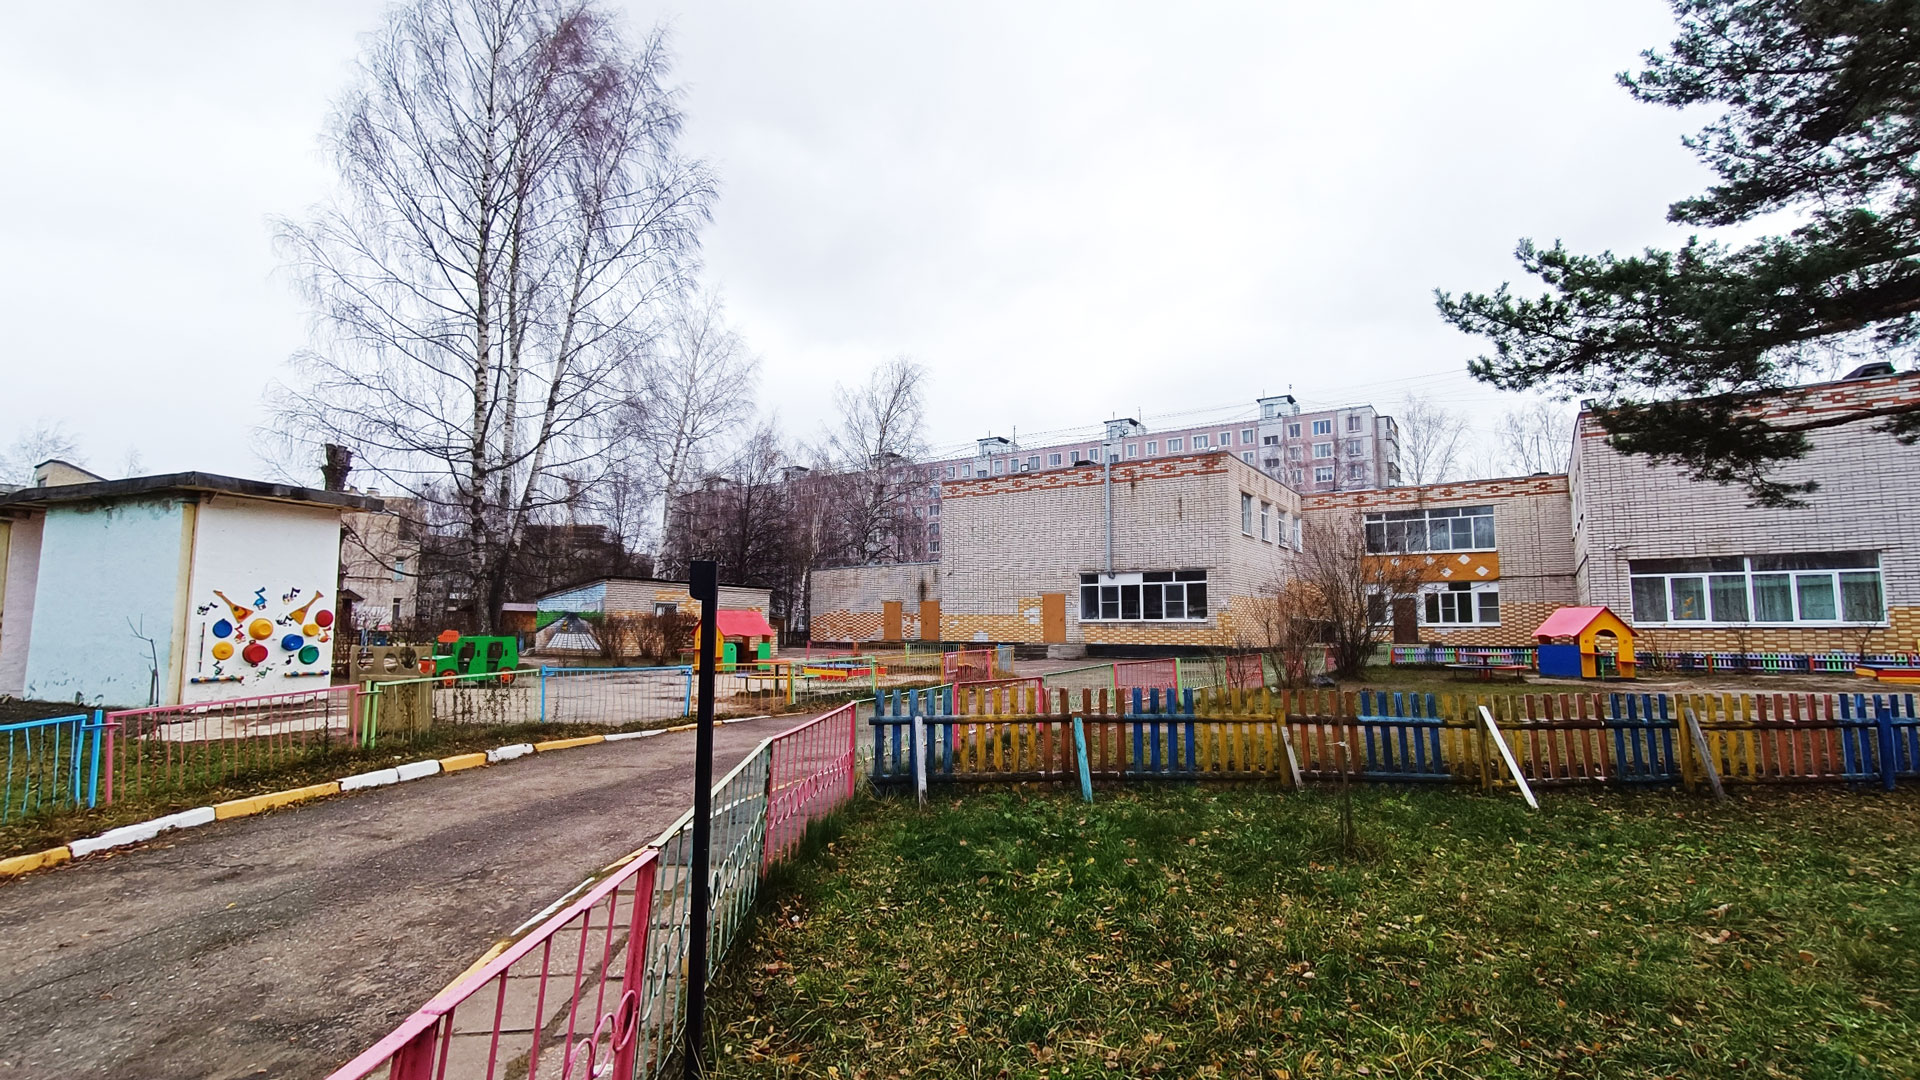 Детский сад 139 Ярославль: общий вид здания и территории.